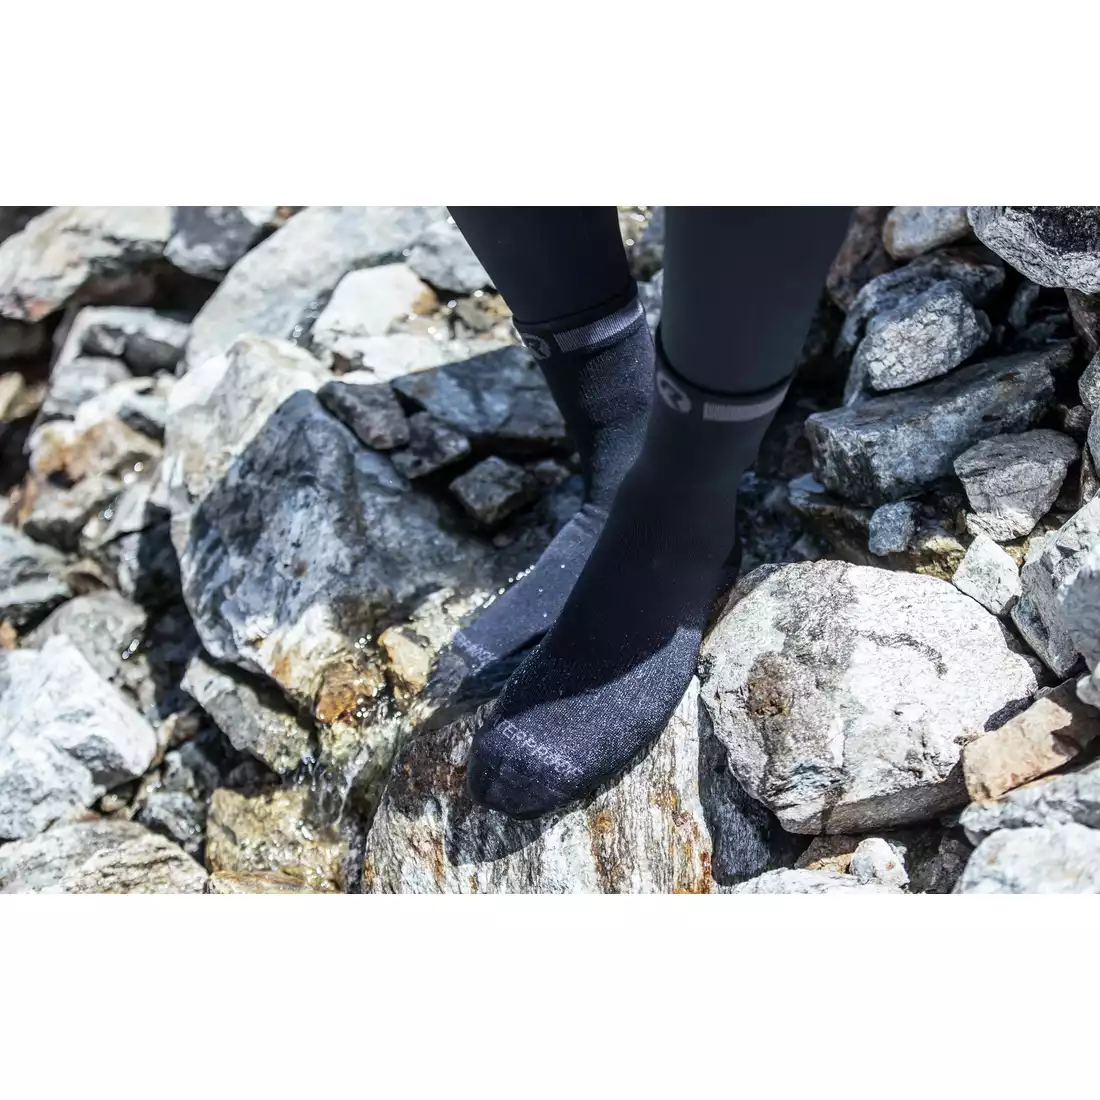 ROGELLI BAMBOO WATERPROOF zimné cyklistické ponožky, čierne